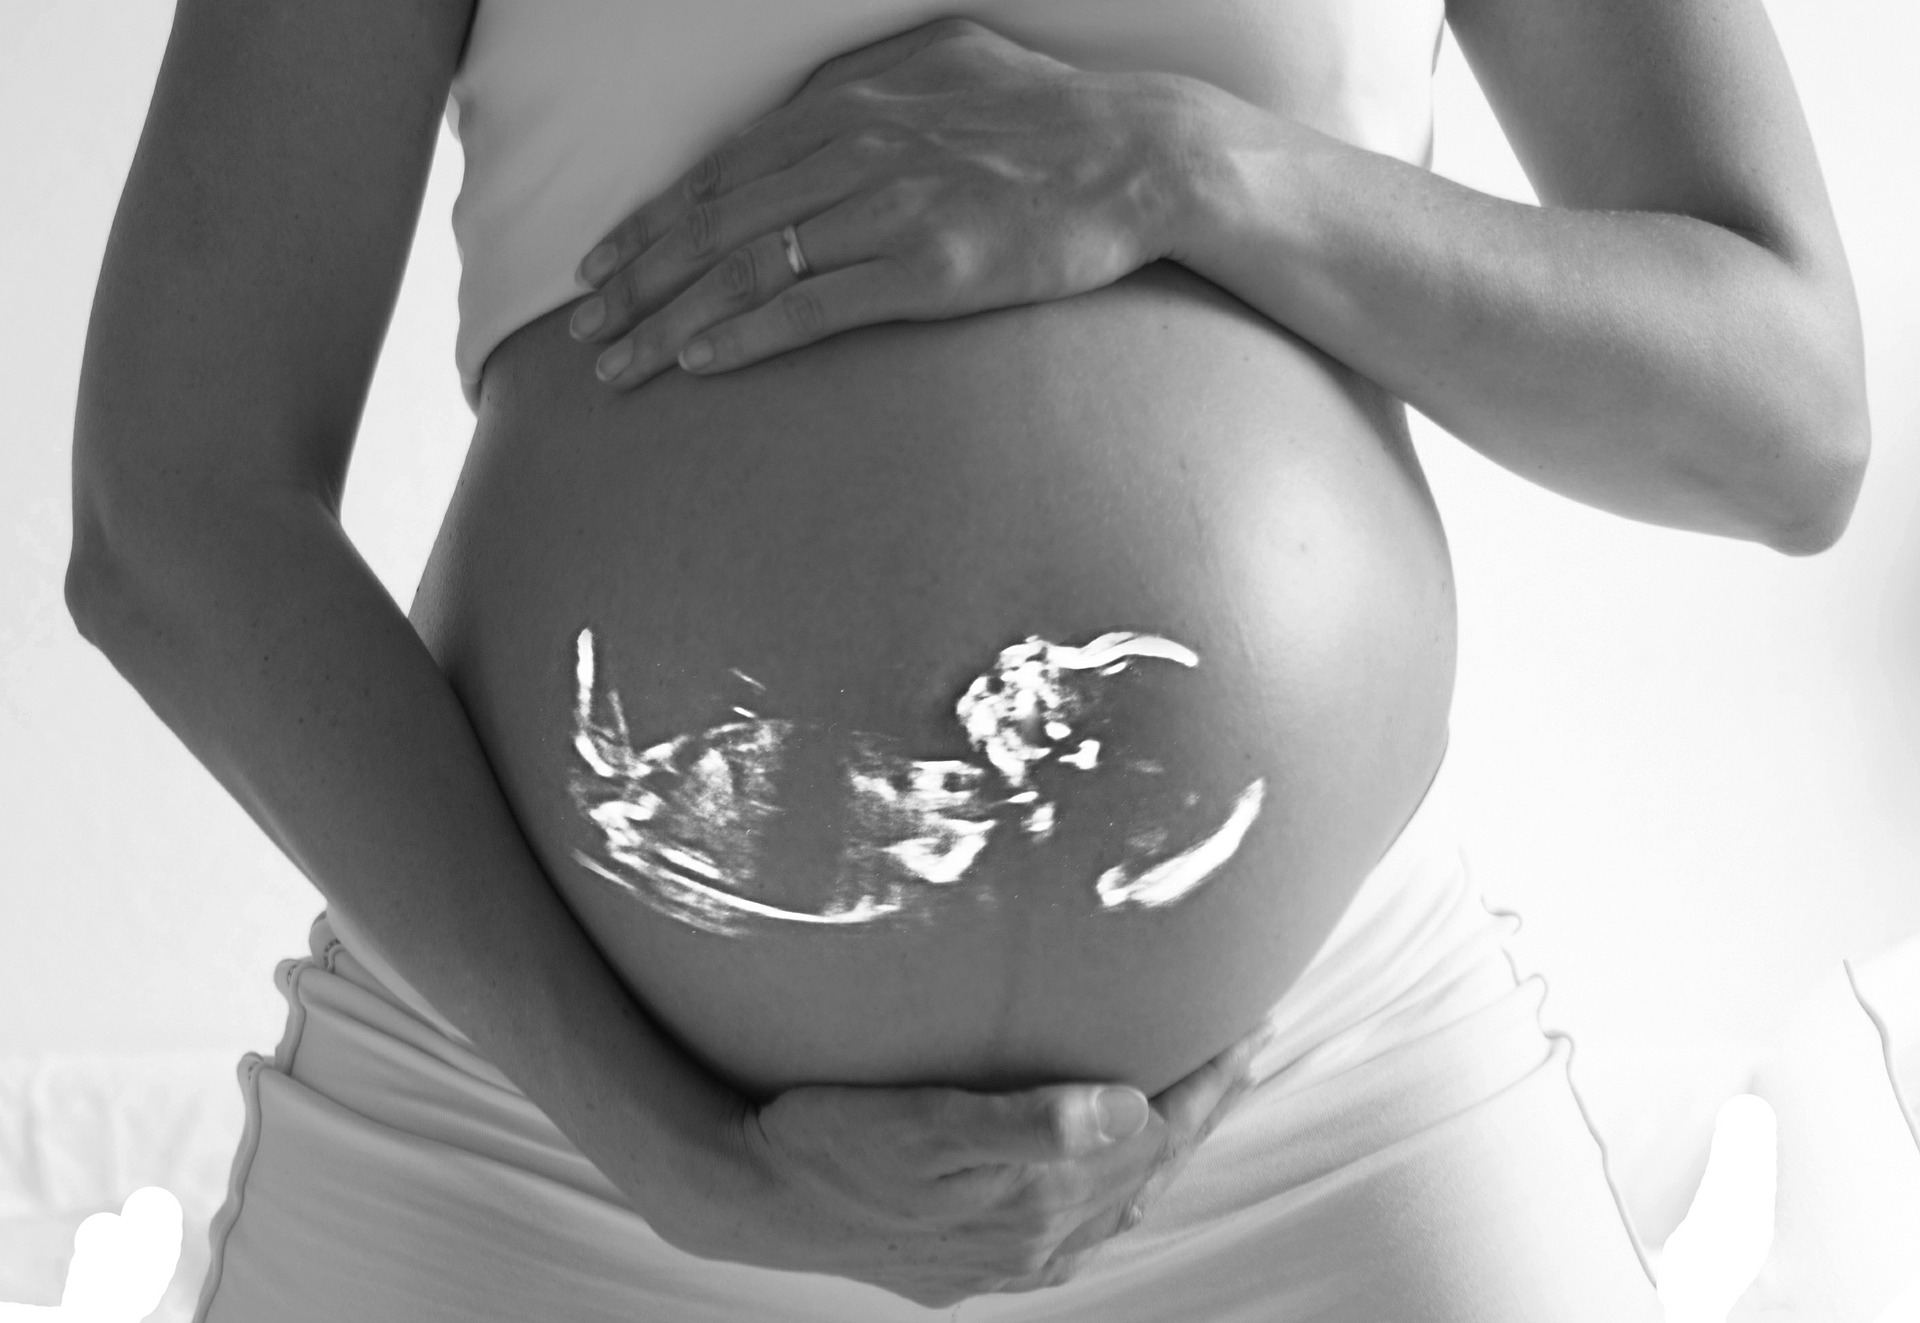 Calculator de sarcina si evolutia sarcinii și a fătlui in fiecare saptamana de sarcina.